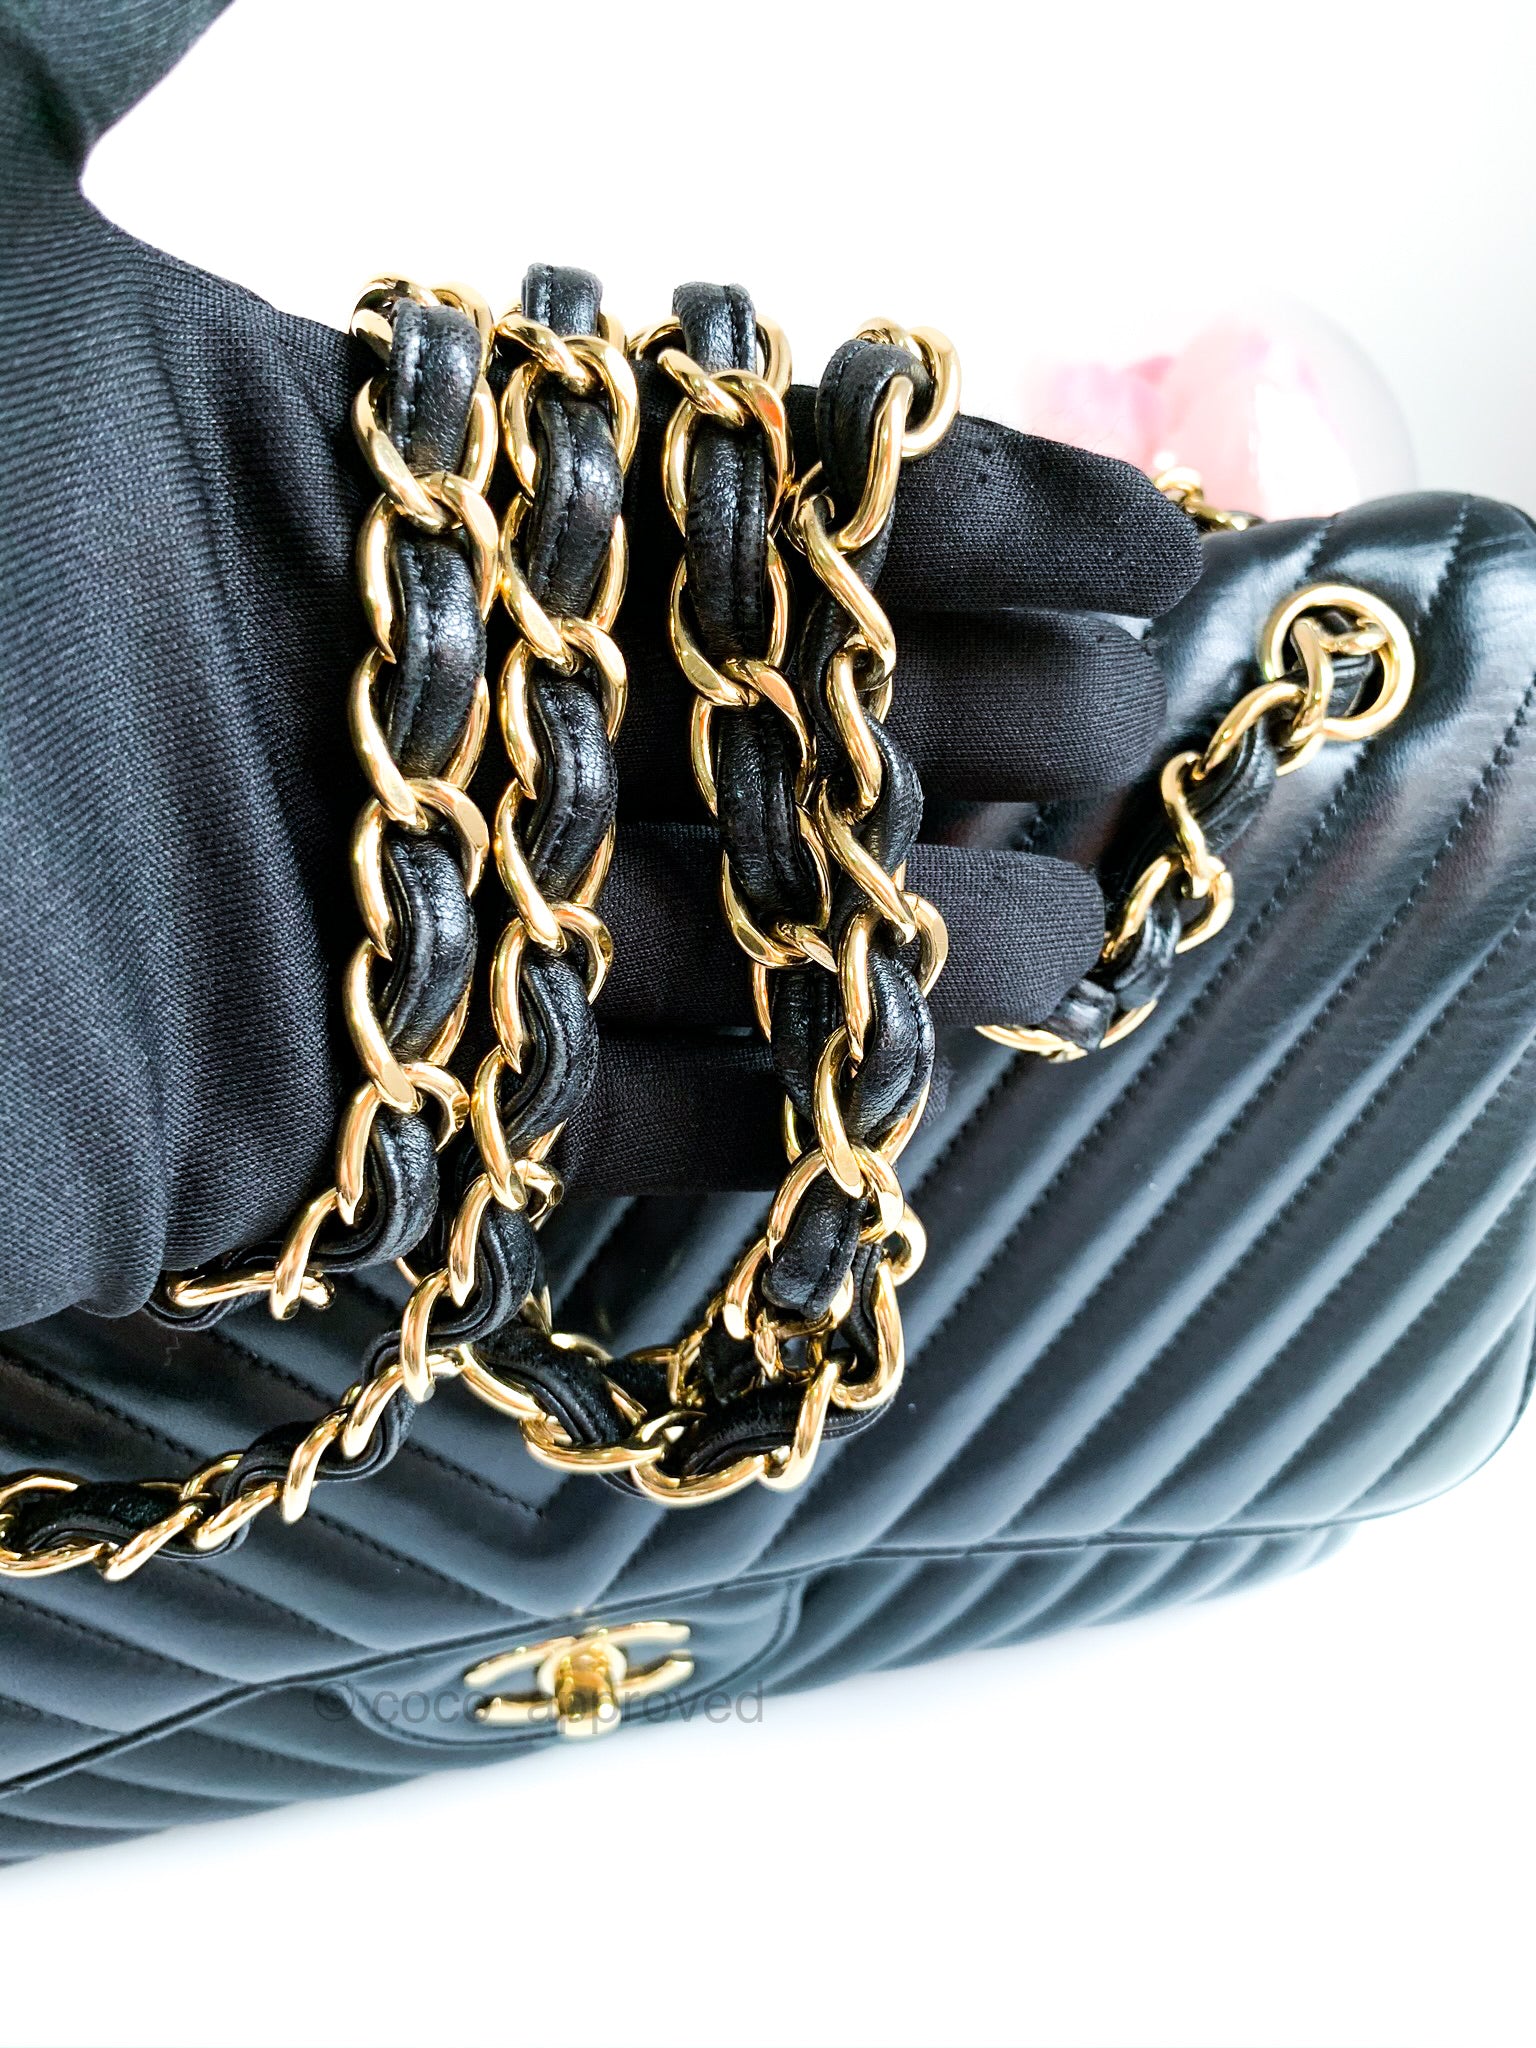 chanel jumbo caviar leather bag